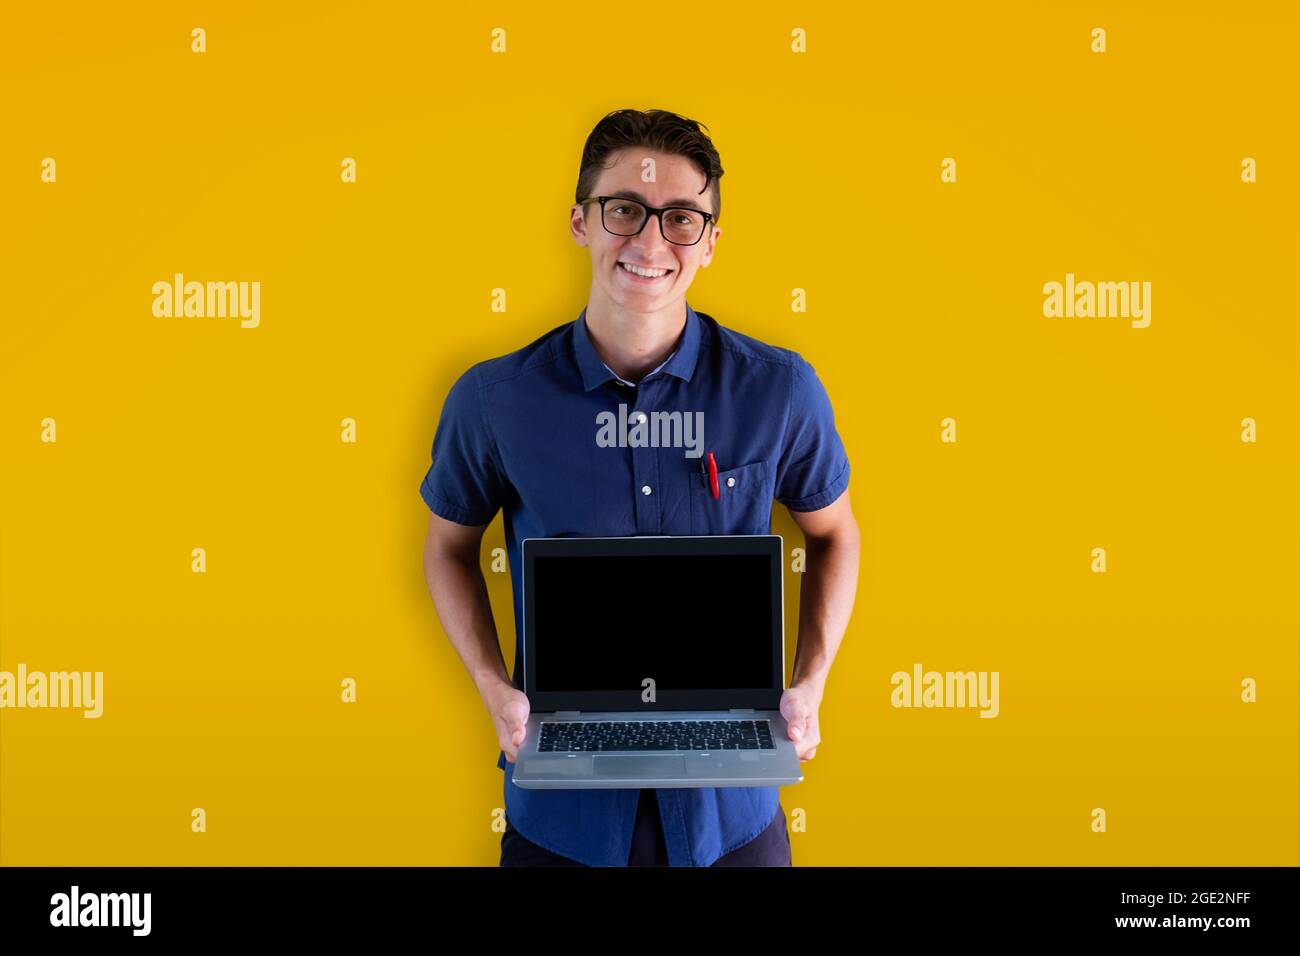 Giovane ragazzo caucasico che tiene un laptop su sfondo giallo. Modello perfetto per cyber Monday, messaggi promozionali e pubblicità. Faccia sorridente. Foto Stock